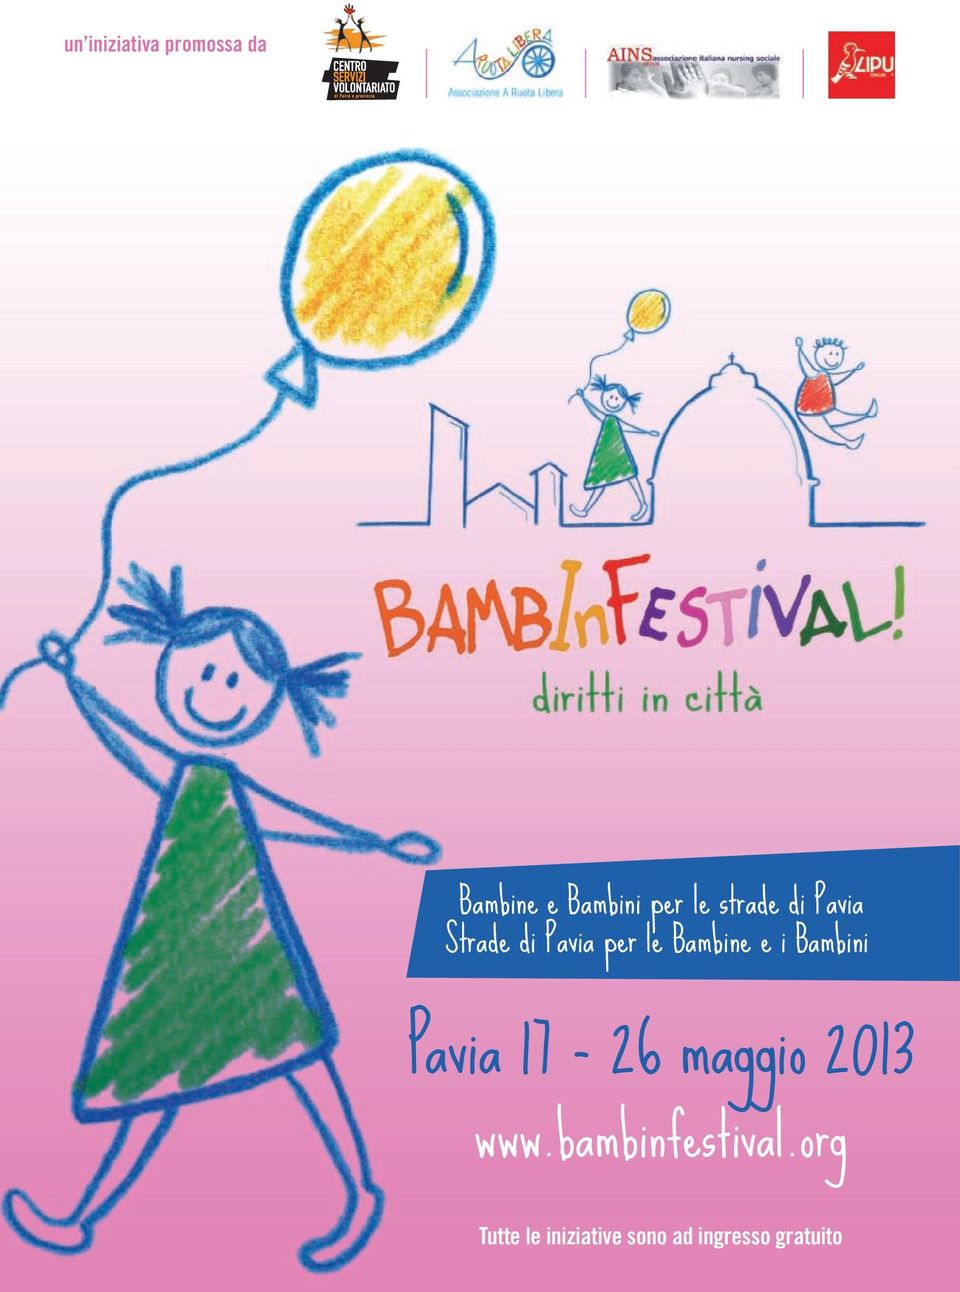 Bambini Pavia 17-26 maggio 2013 www.bambinfestival.